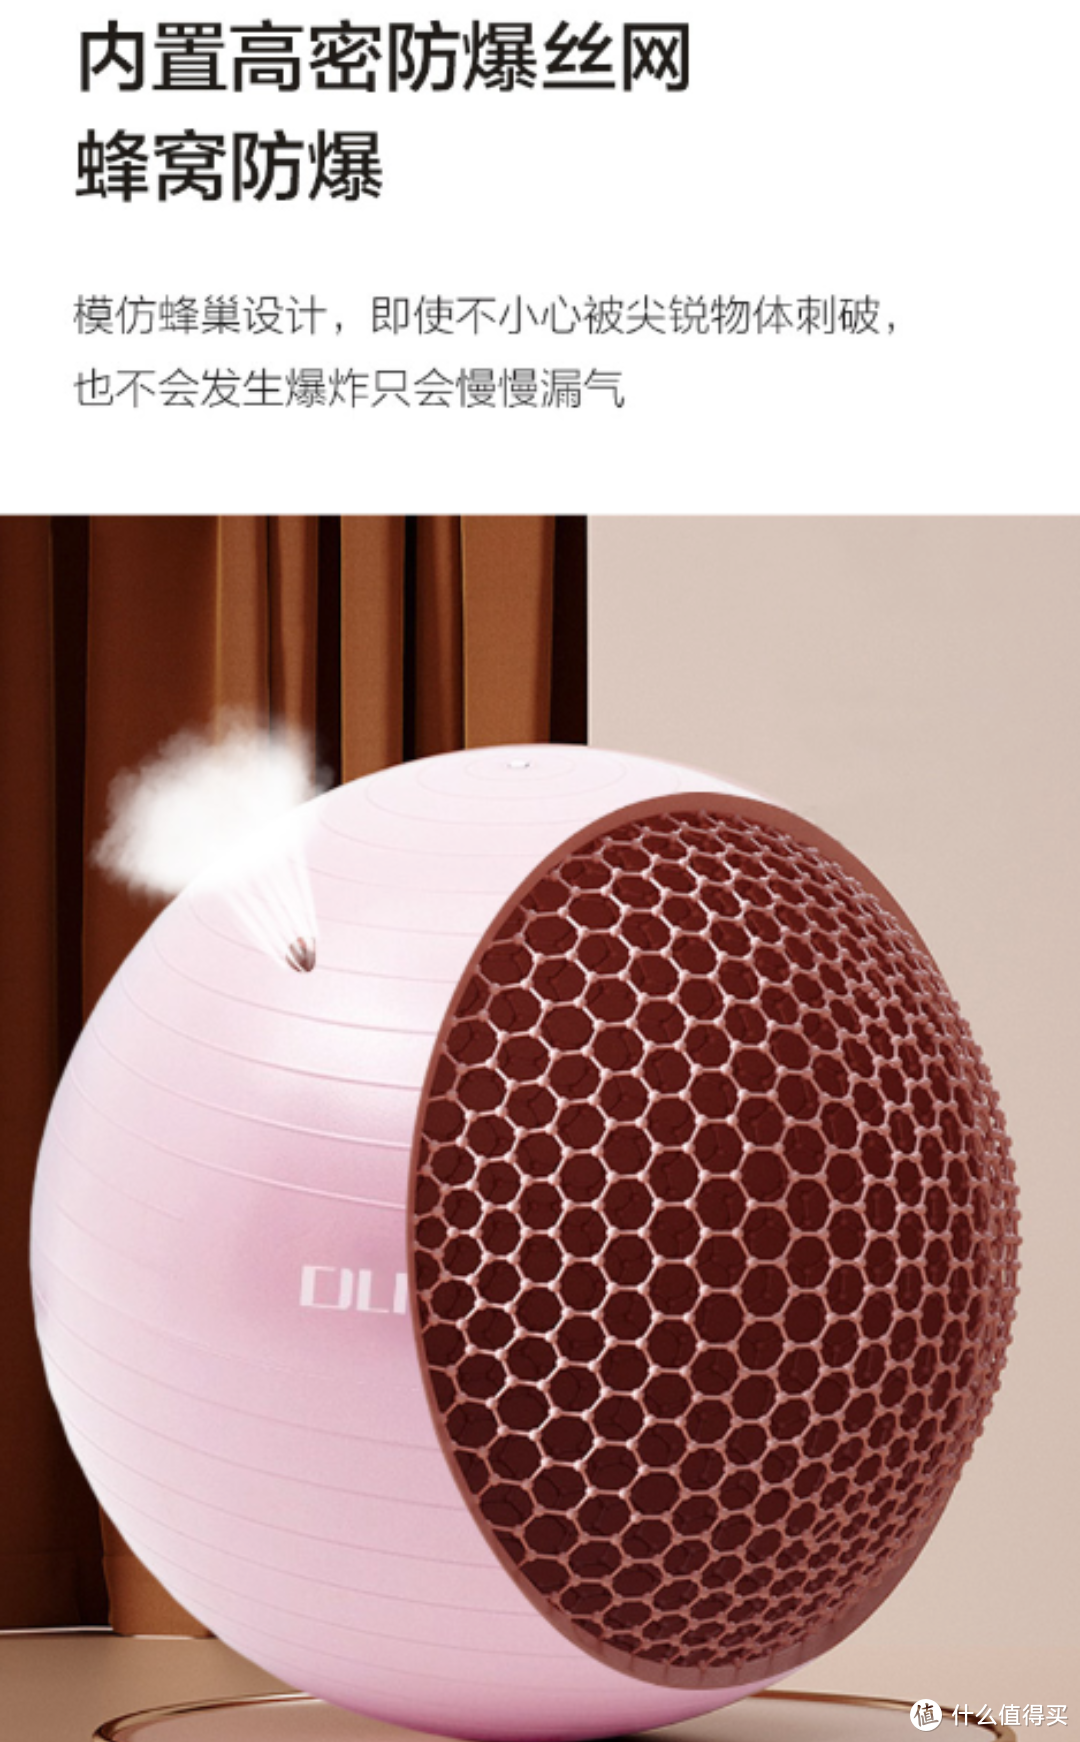 杜威克瑜伽球55cm加厚防滑健身球——打造健康美好生活的好装备